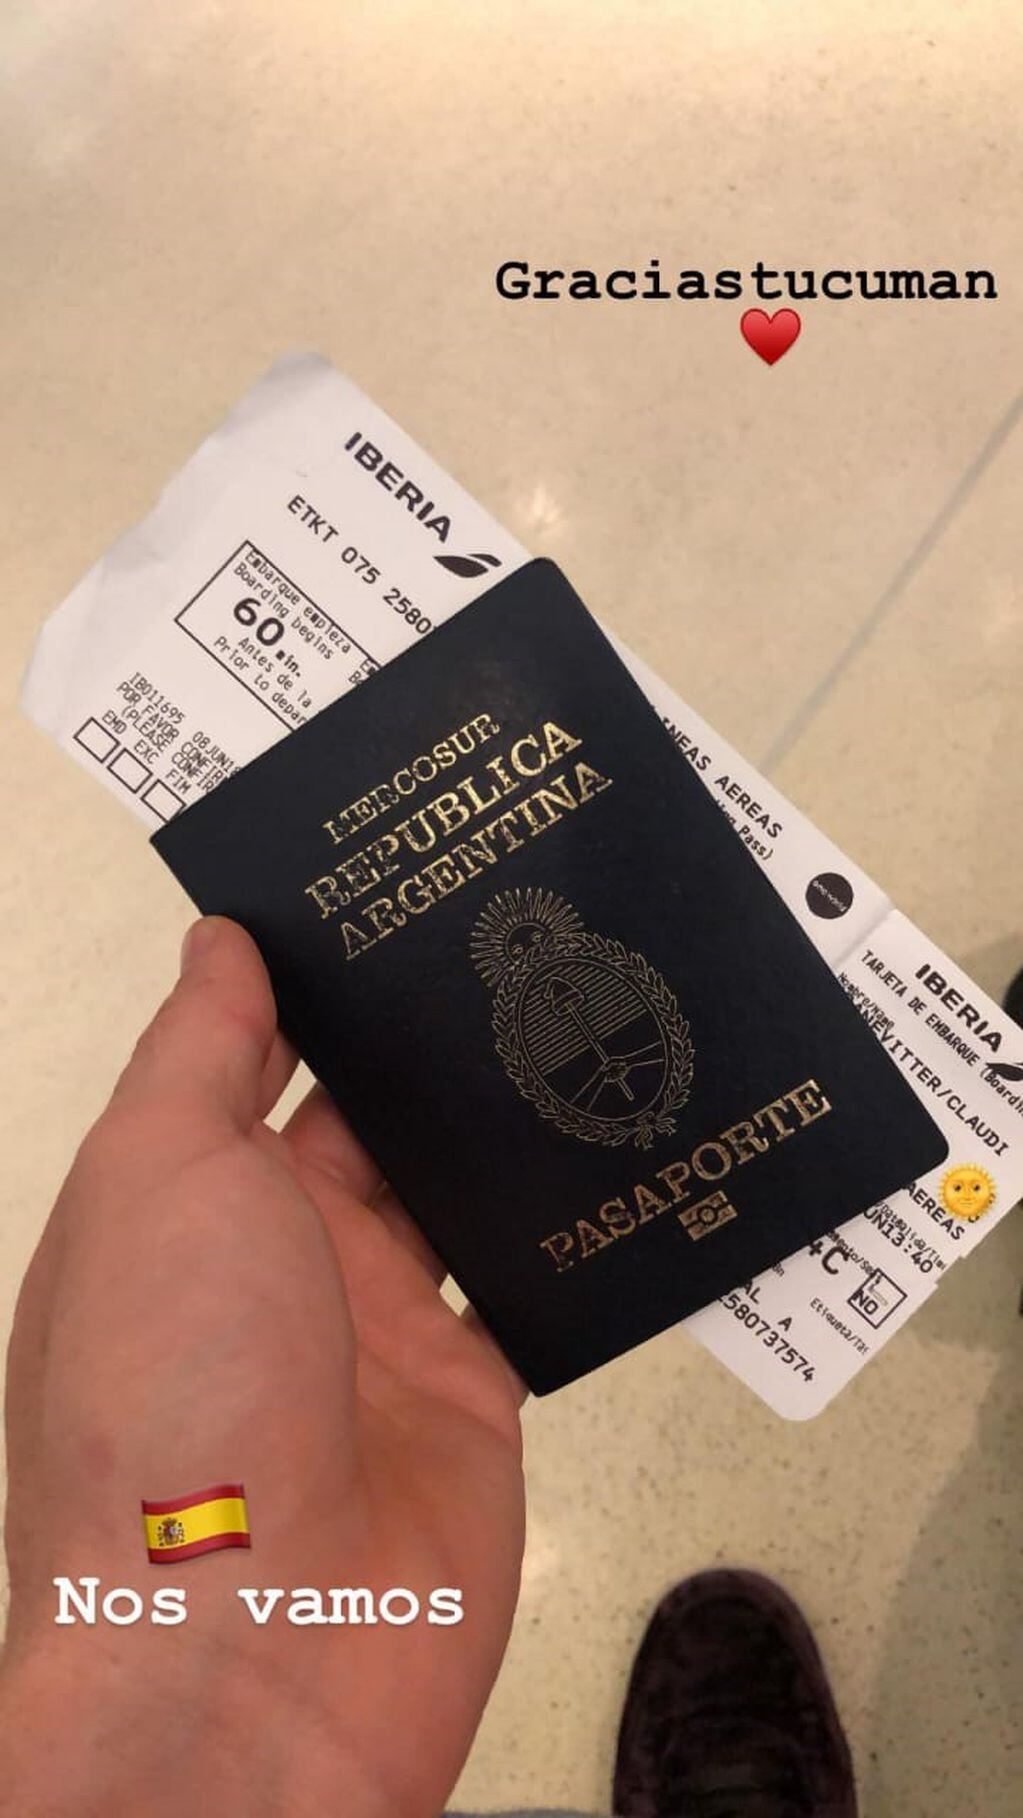 La historia que subió Kranevitter a Instagram, mostrando su pasaporte y su pasaje a España